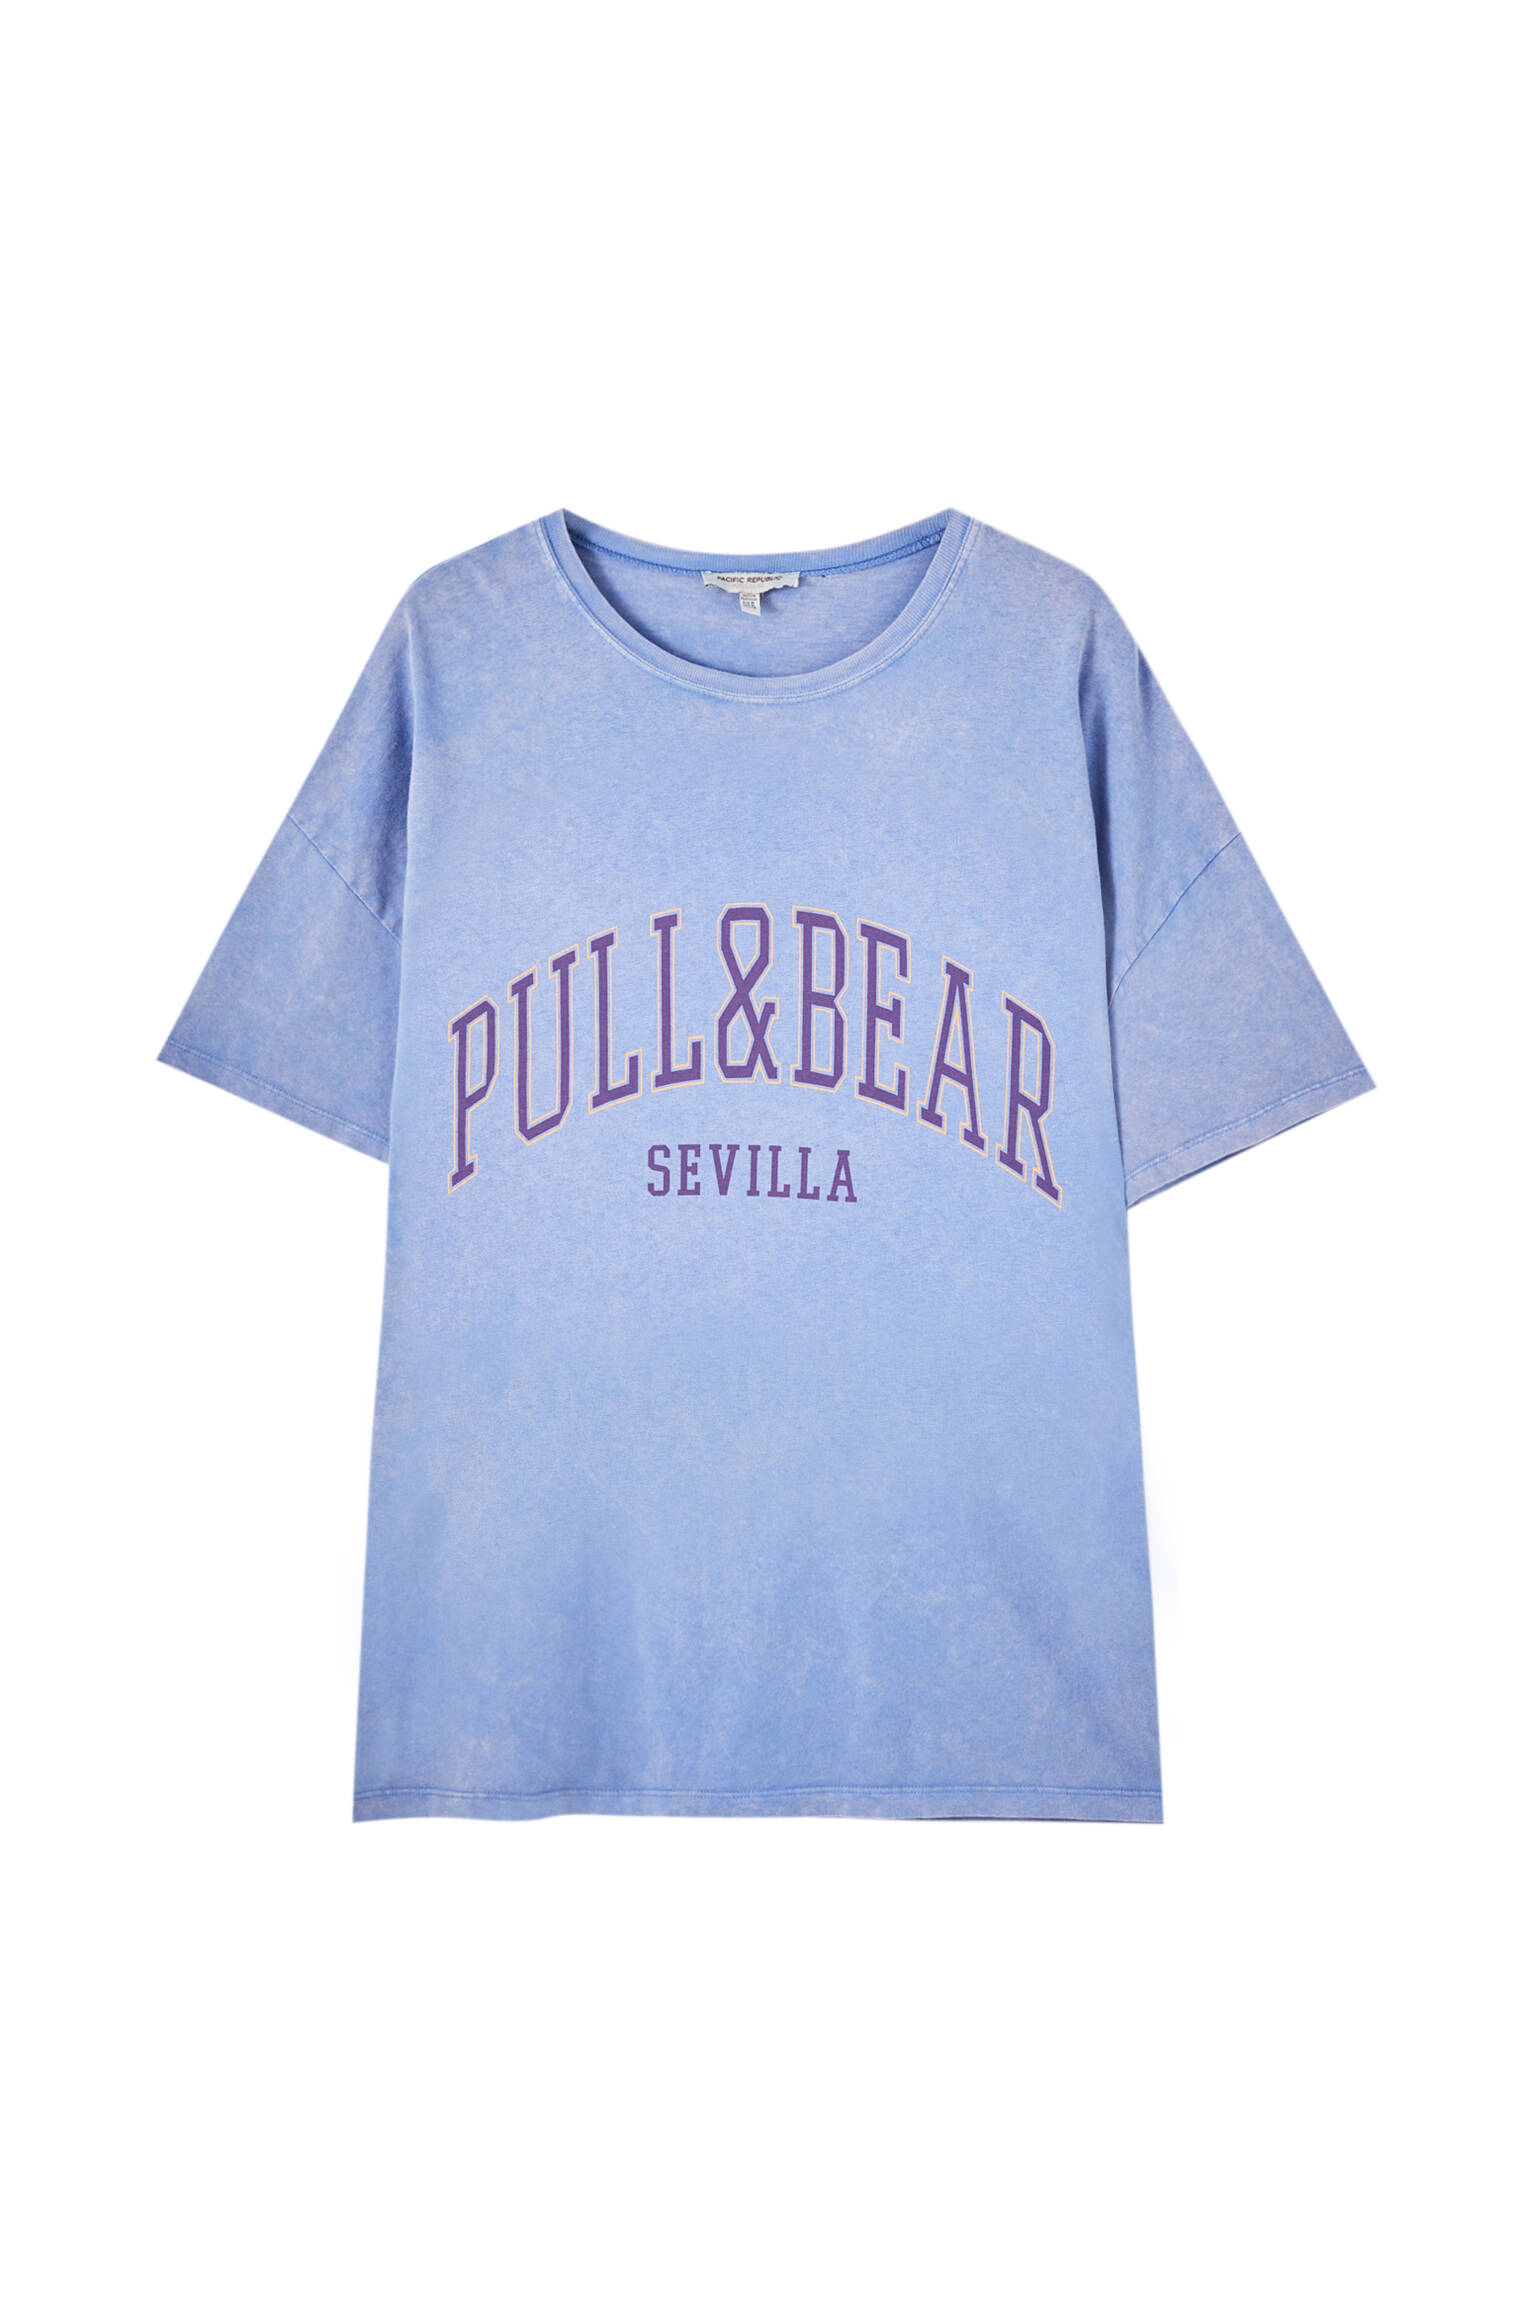 Pull&bear Femme T-shirt 100 % Coton à Col Rond Et Manches Courtes, Avec Logo Pull&bear Et Inscription Sevilla Contrastante Sur La Poitrine. Indigo DÉlavÉ M